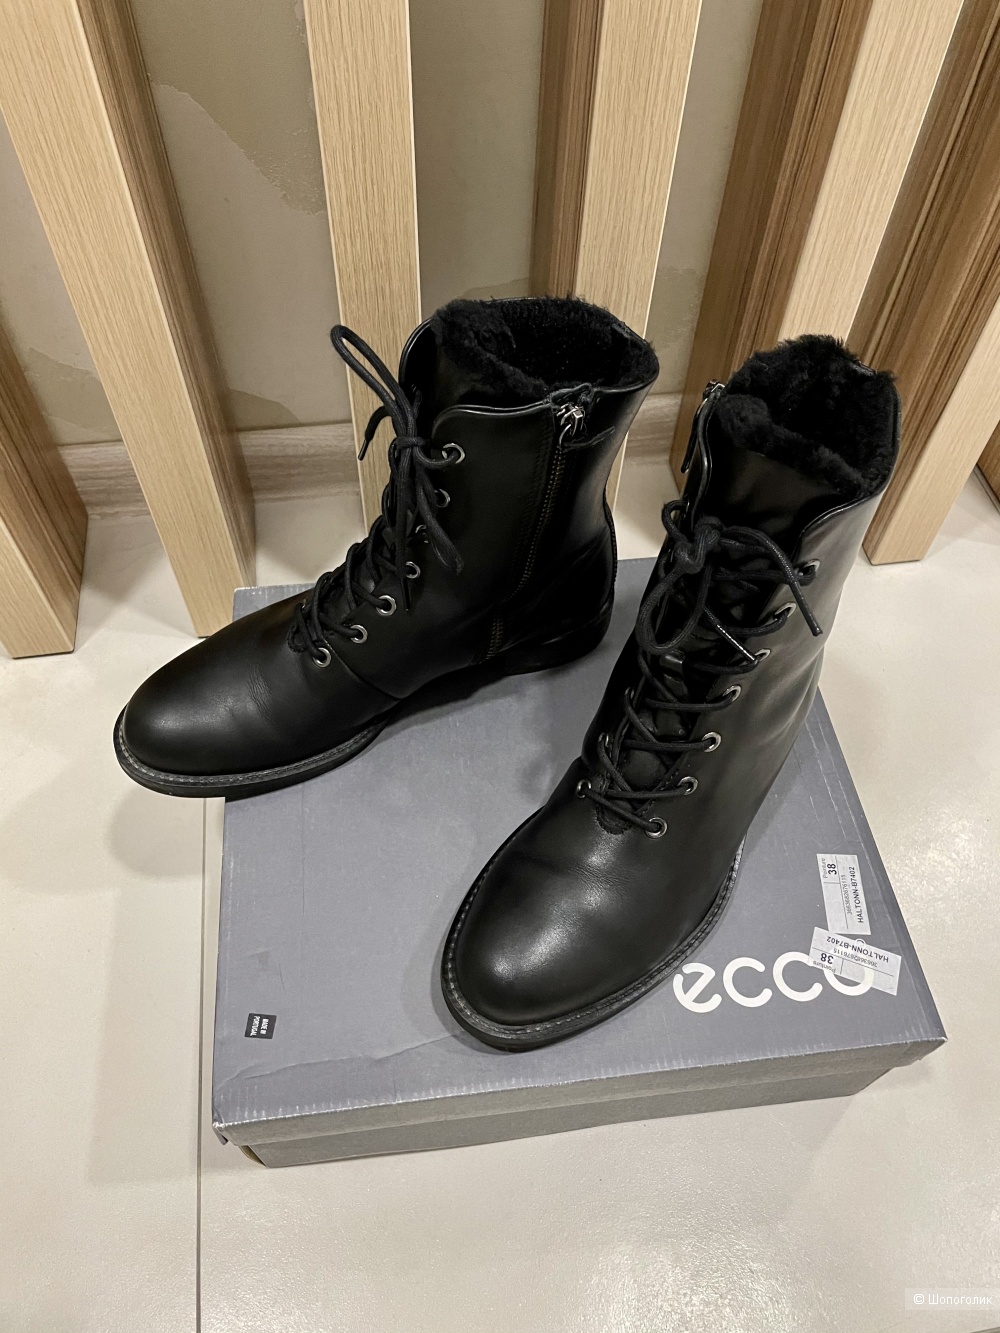 Сапоги ботинки Ecco размер 38